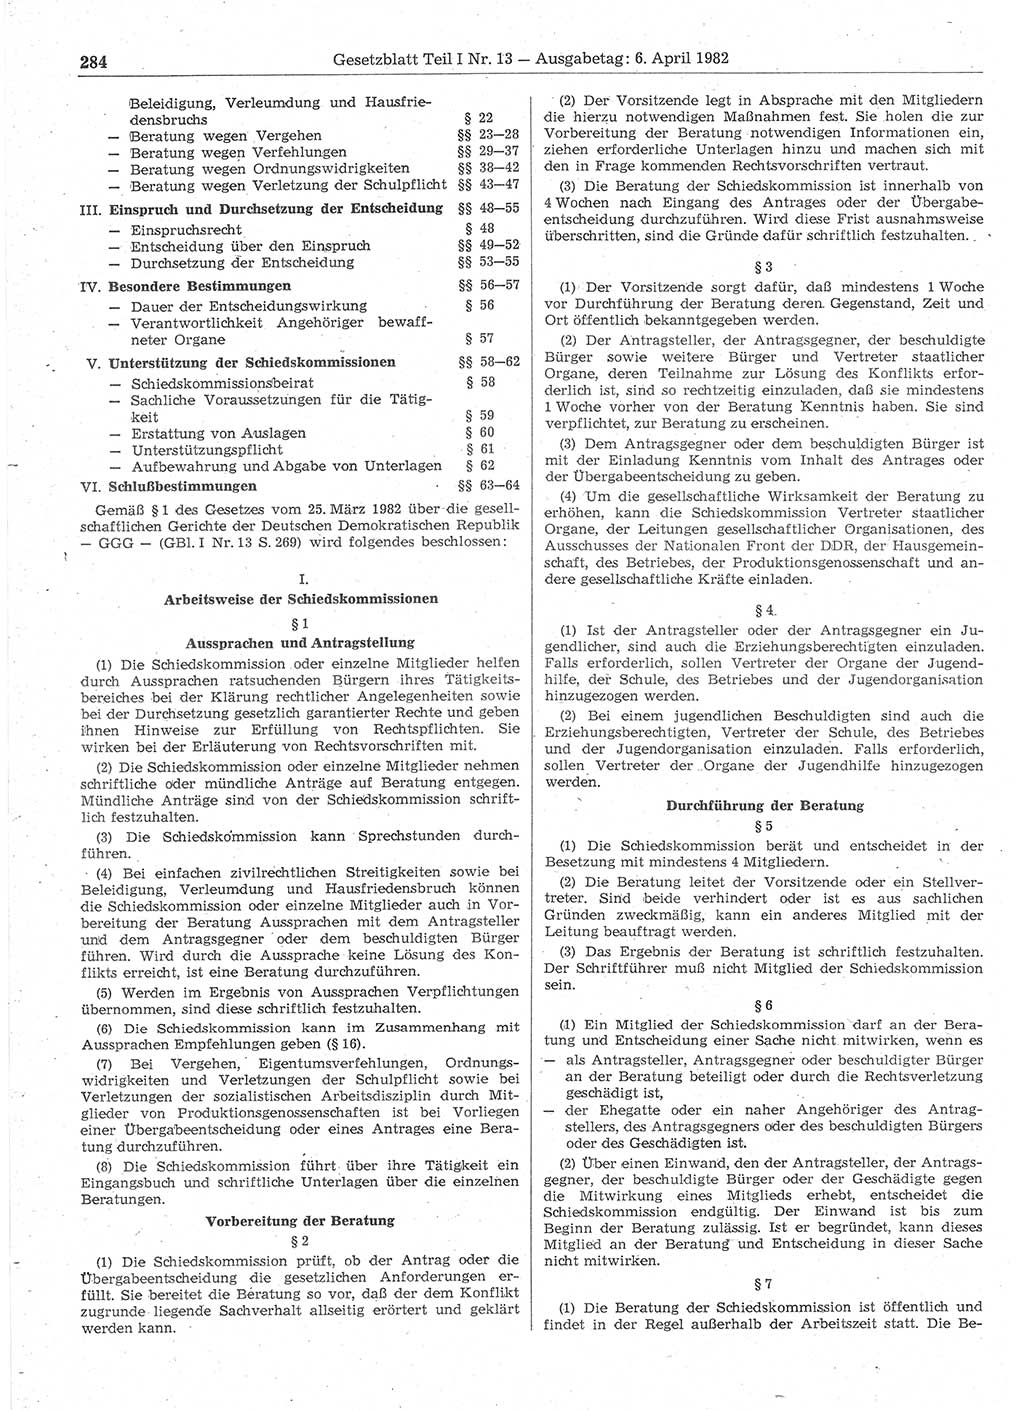 Gesetzblatt (GBl.) der Deutschen Demokratischen Republik (DDR) Teil Ⅰ 1982, Seite 284 (GBl. DDR Ⅰ 1982, S. 284)